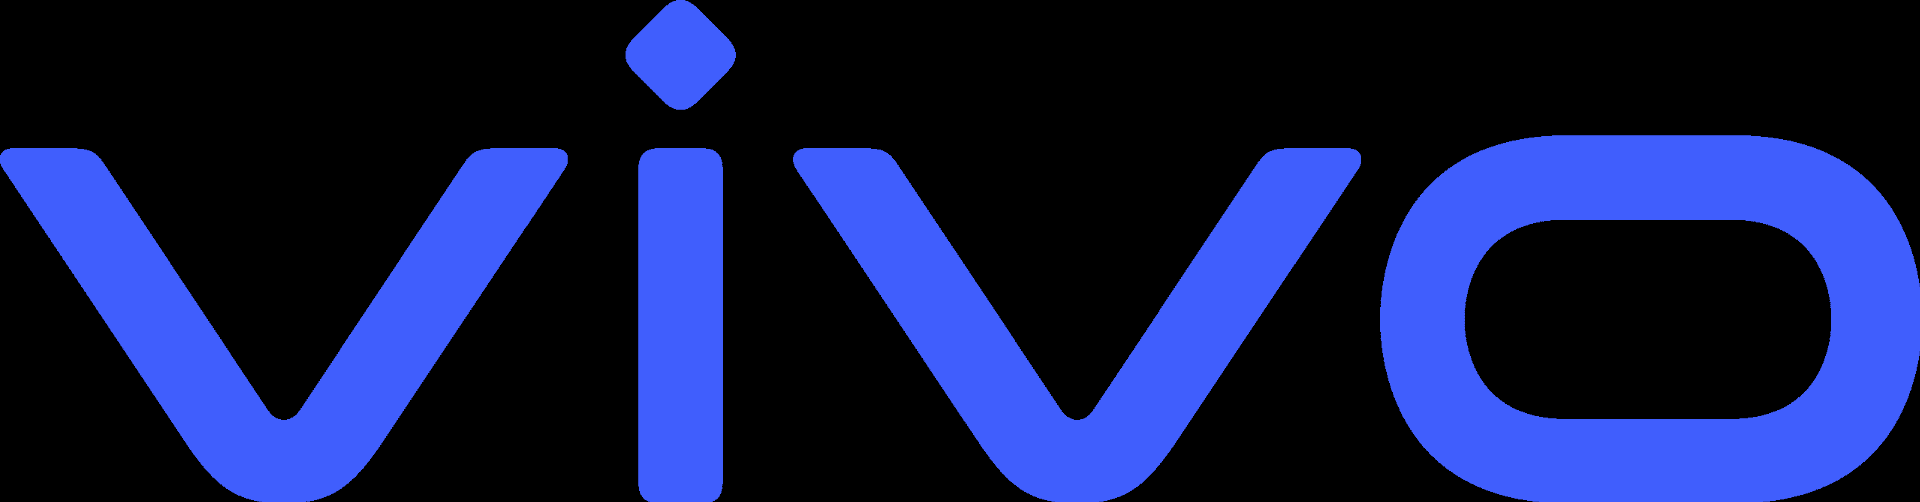 Vivo на русском языке. Знак Виво. Vivo логотип для телефонов. Vivo надпись. Логотипы.черные.Виво.